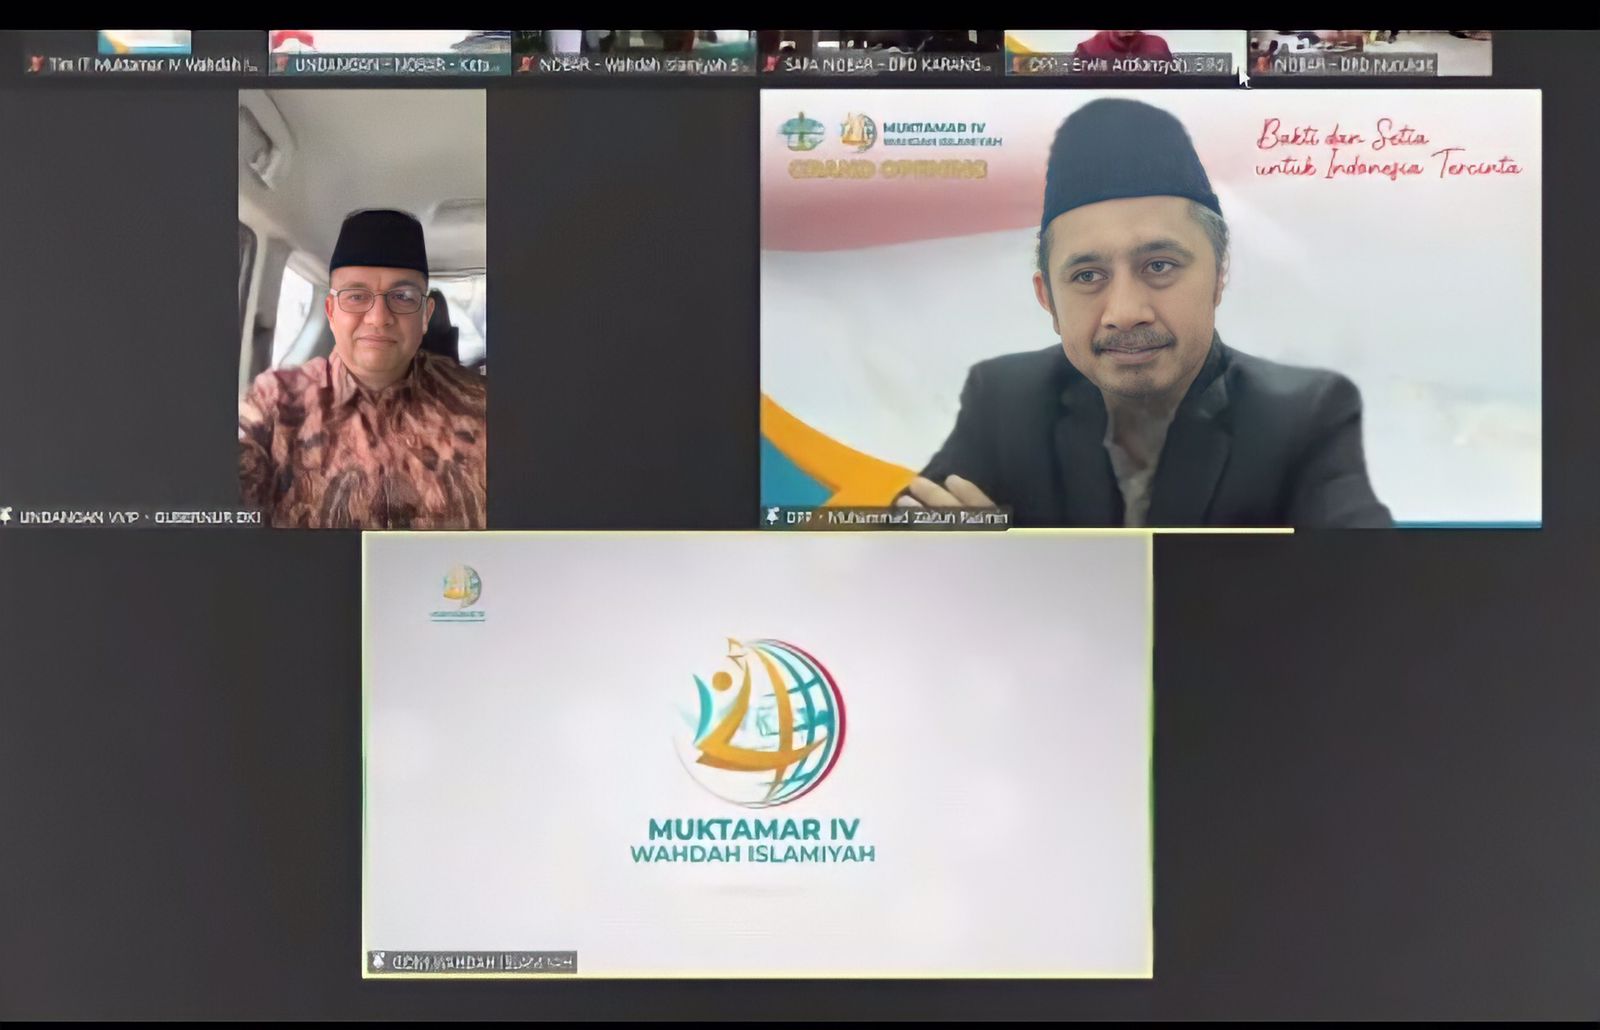 Di Muktamar IV Wahdah Islamiyah, Anies Baswedan: Materi Pendidikan Bagi Orang Tua Juga Penting